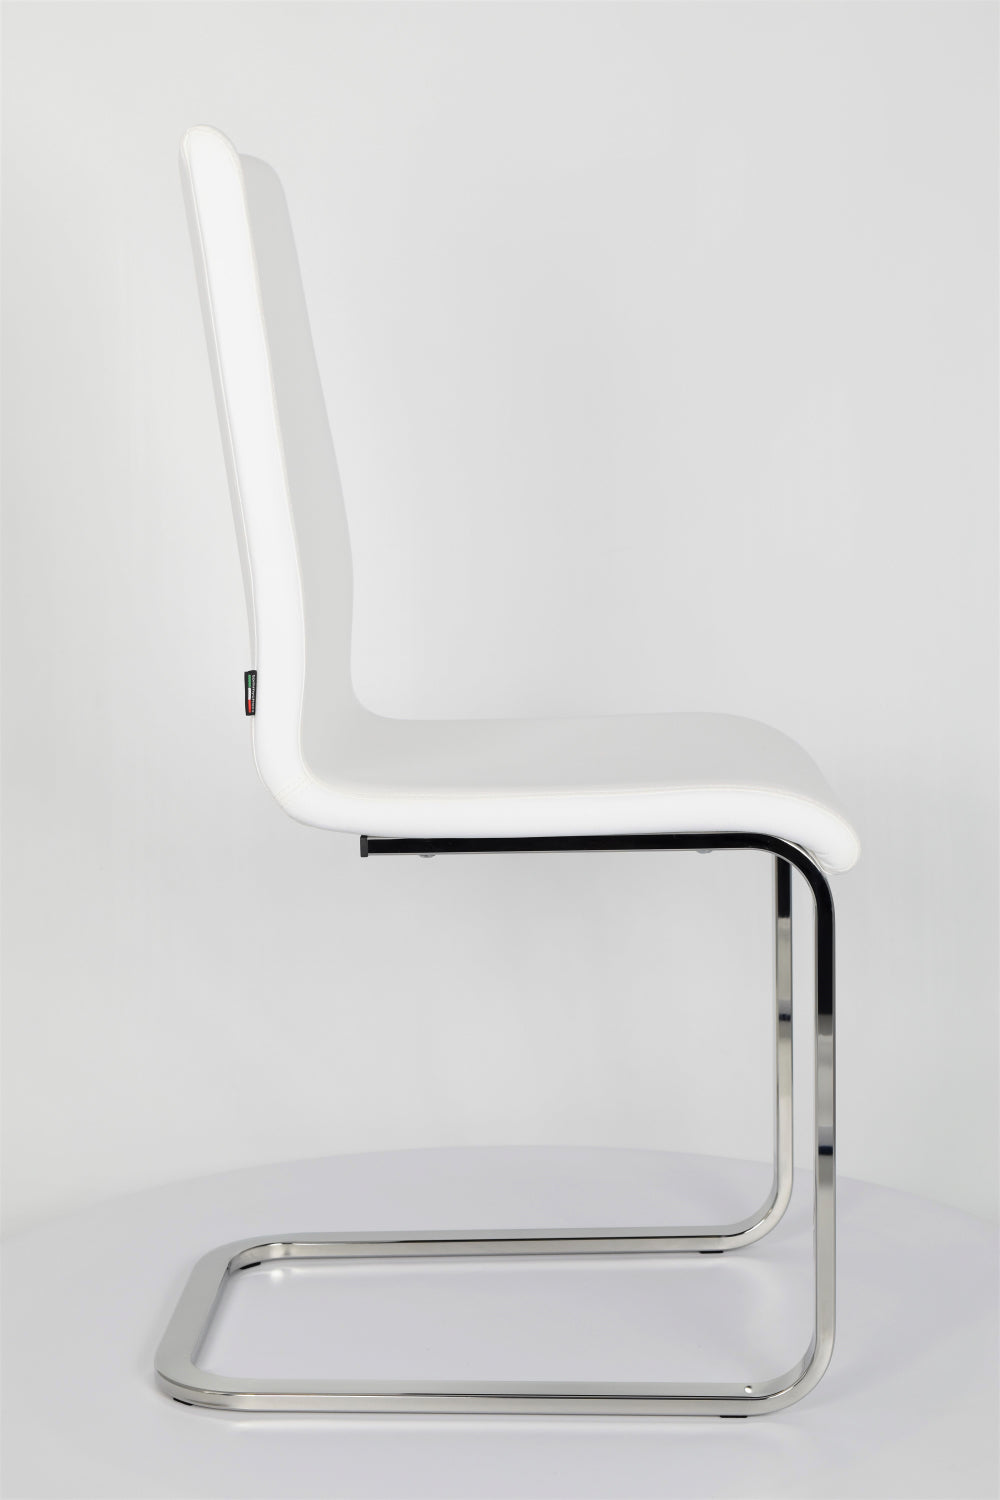 Tommychairs - Set 2 sillas Berlin Cantilever con Patas de Acero Cromado de Alta Resistencia y Asiento en Madera Multicapa, tapizado en Polipiel Blanca